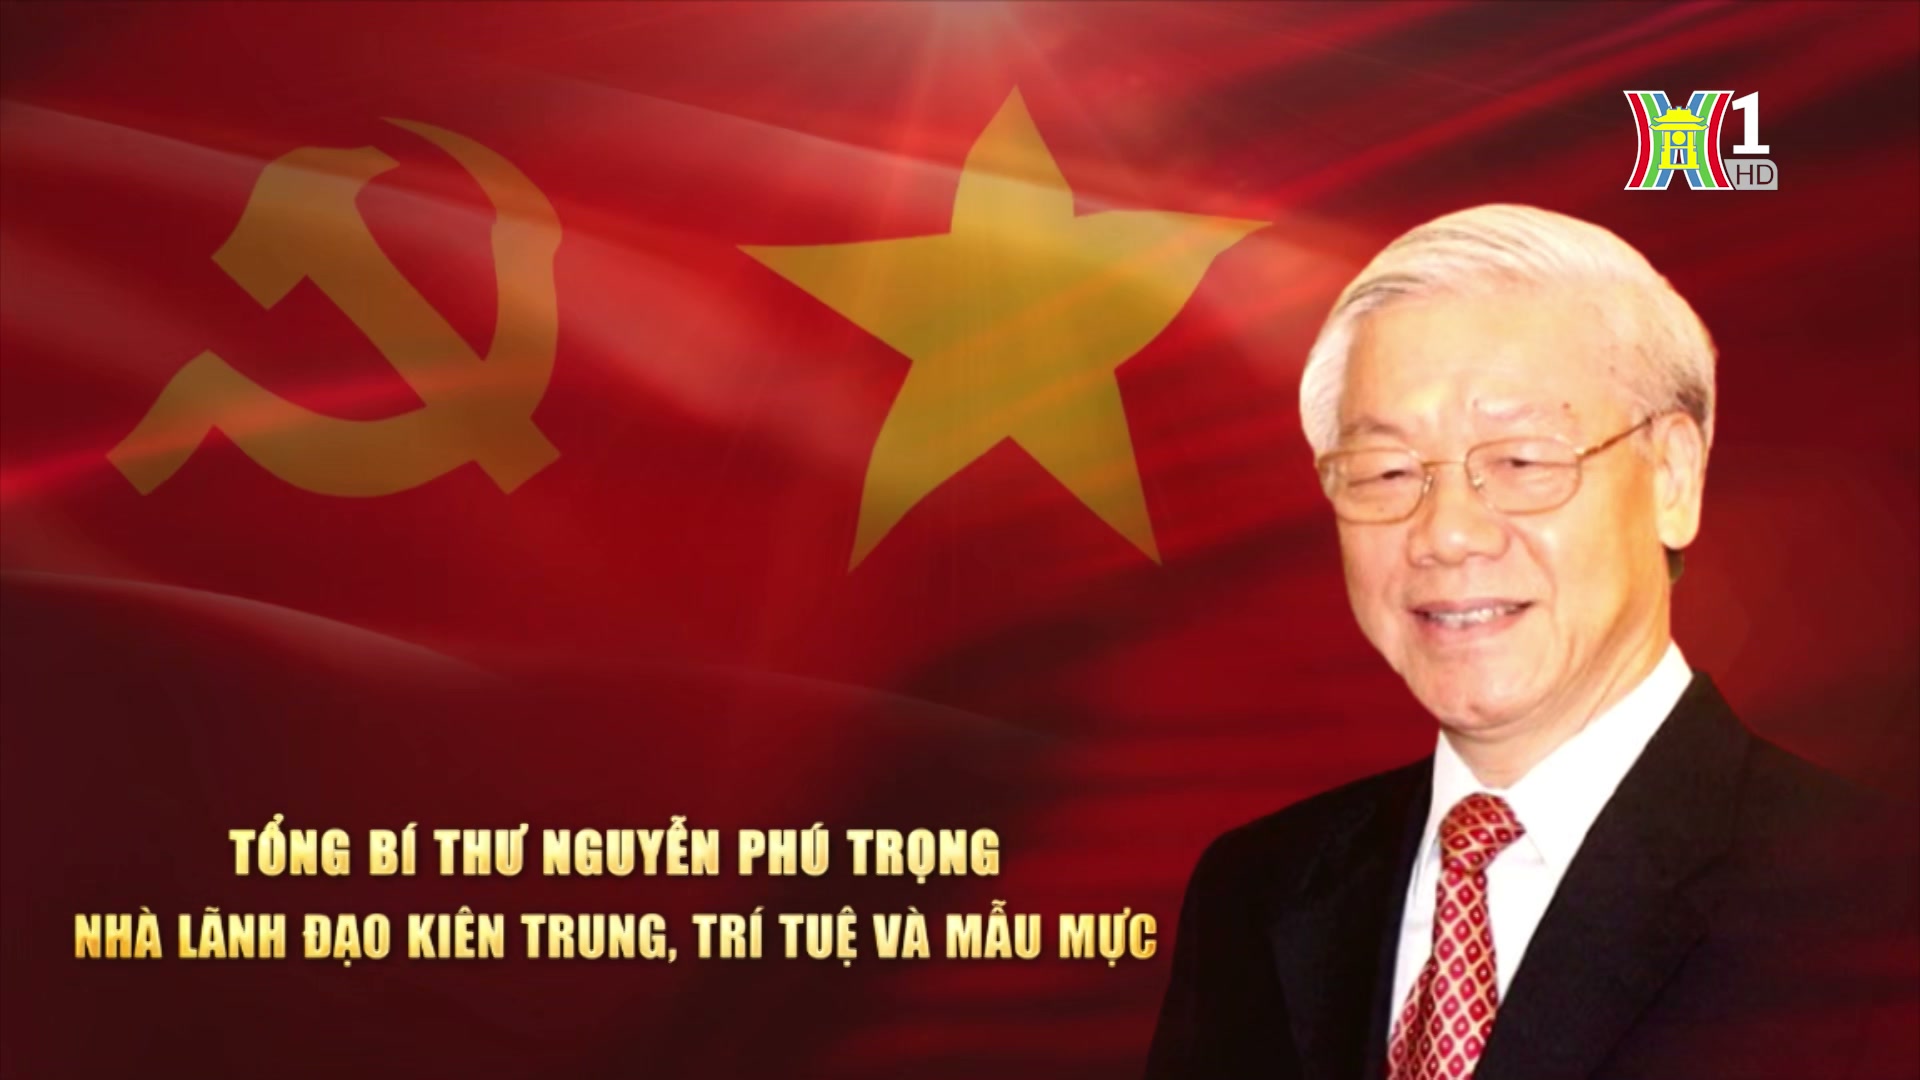 Tổng Bí thư Nguyễn Phú Trọng - Nhà lãnh đạo trí tuệ, kiên trung và mẫu mực